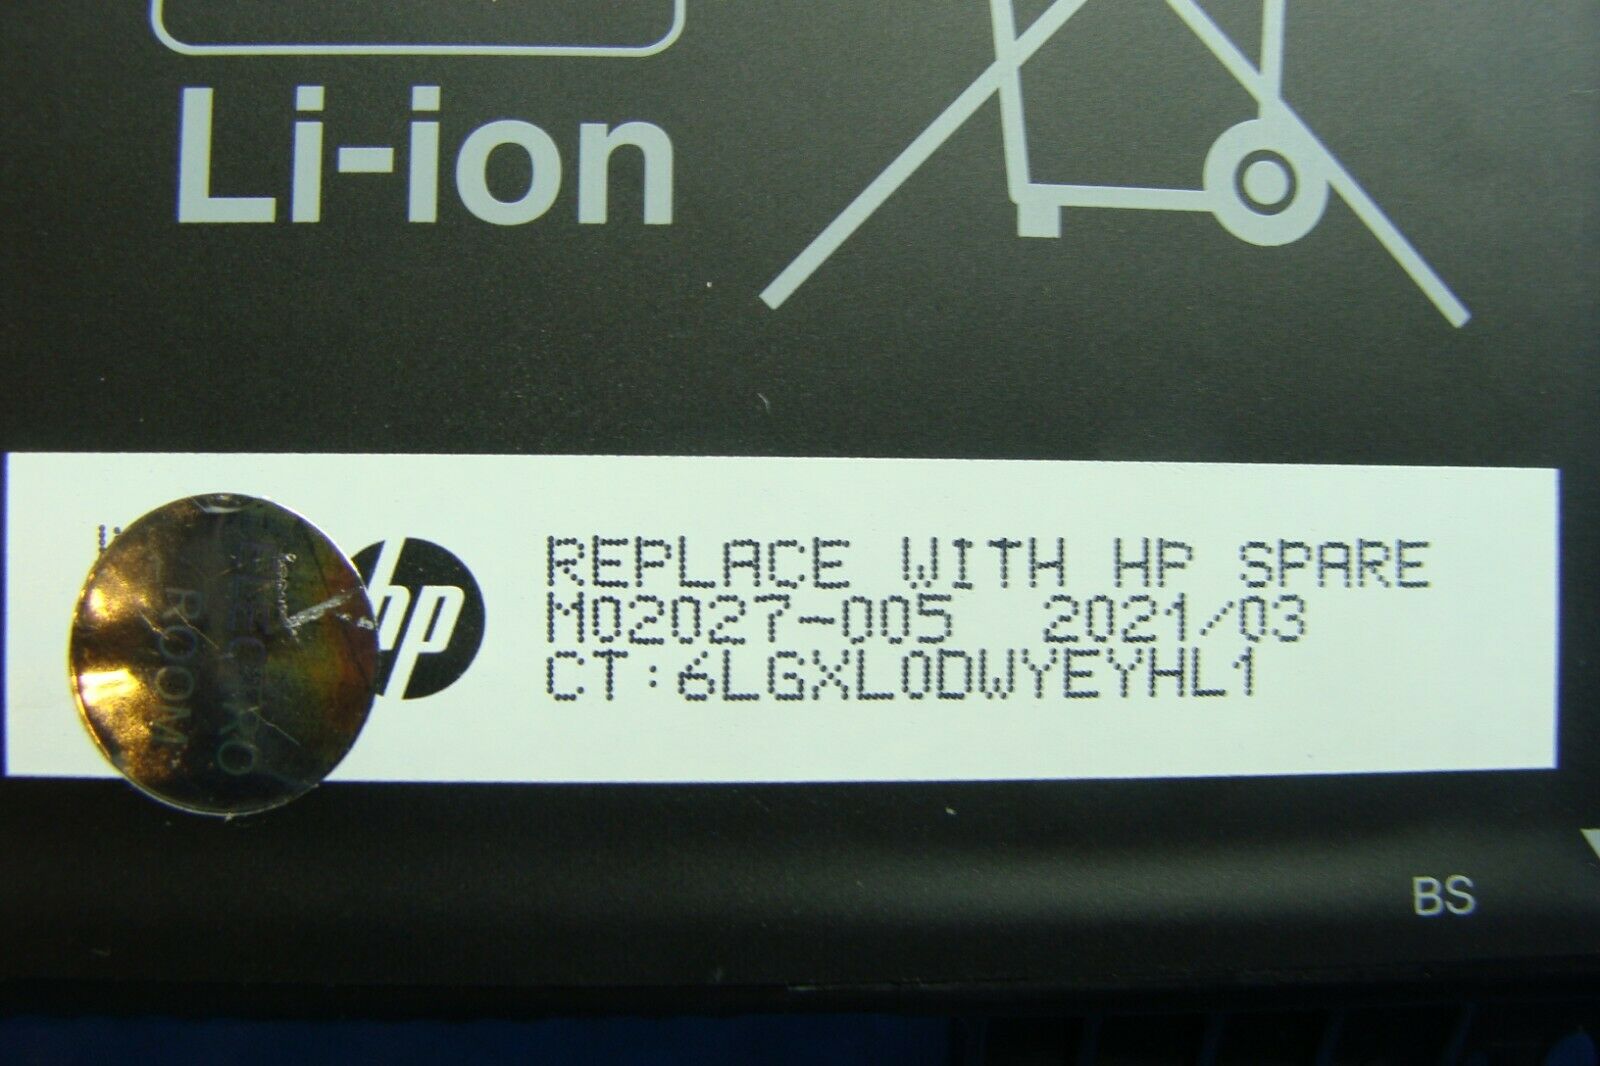 HP Probook 450 G8 15.6